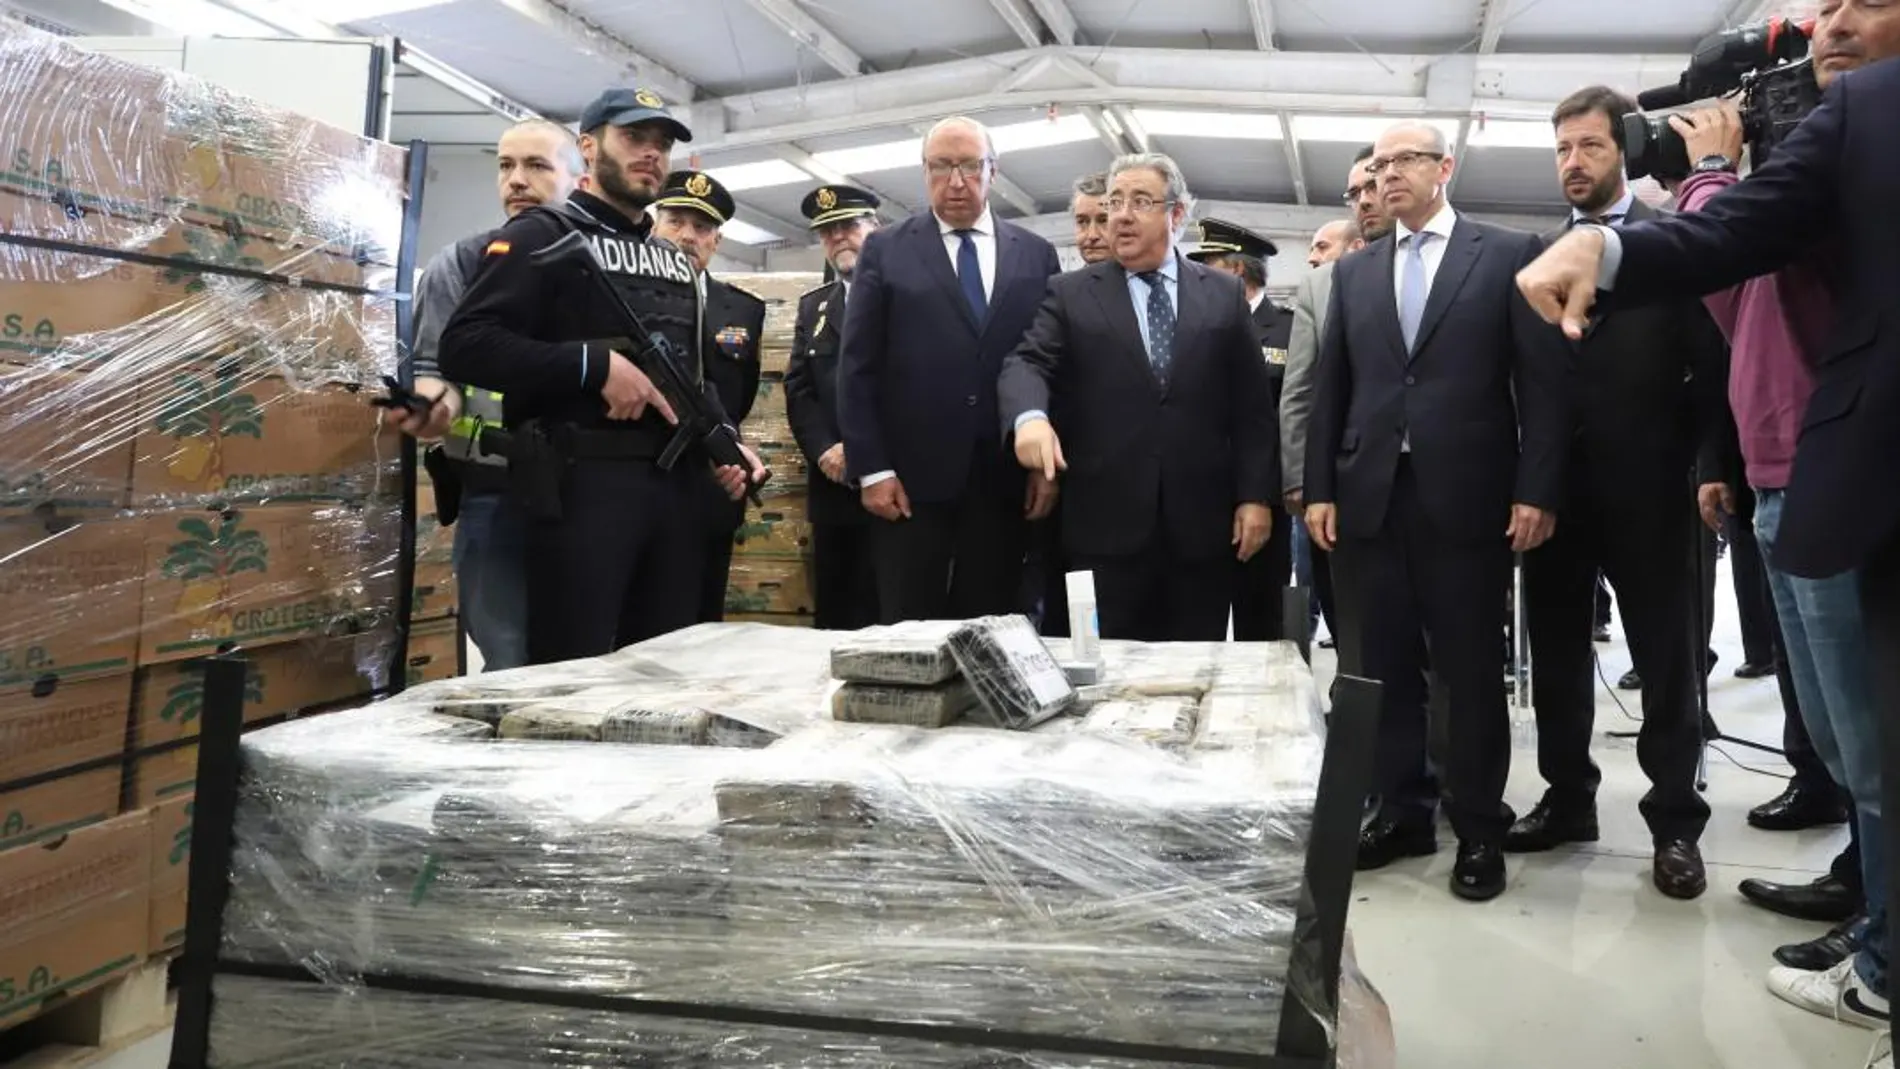 El ministro del Interior, Juan Antonio Zoido, durante una visita a la Línea tras una operación contra el tráfico de drogas/ Efe